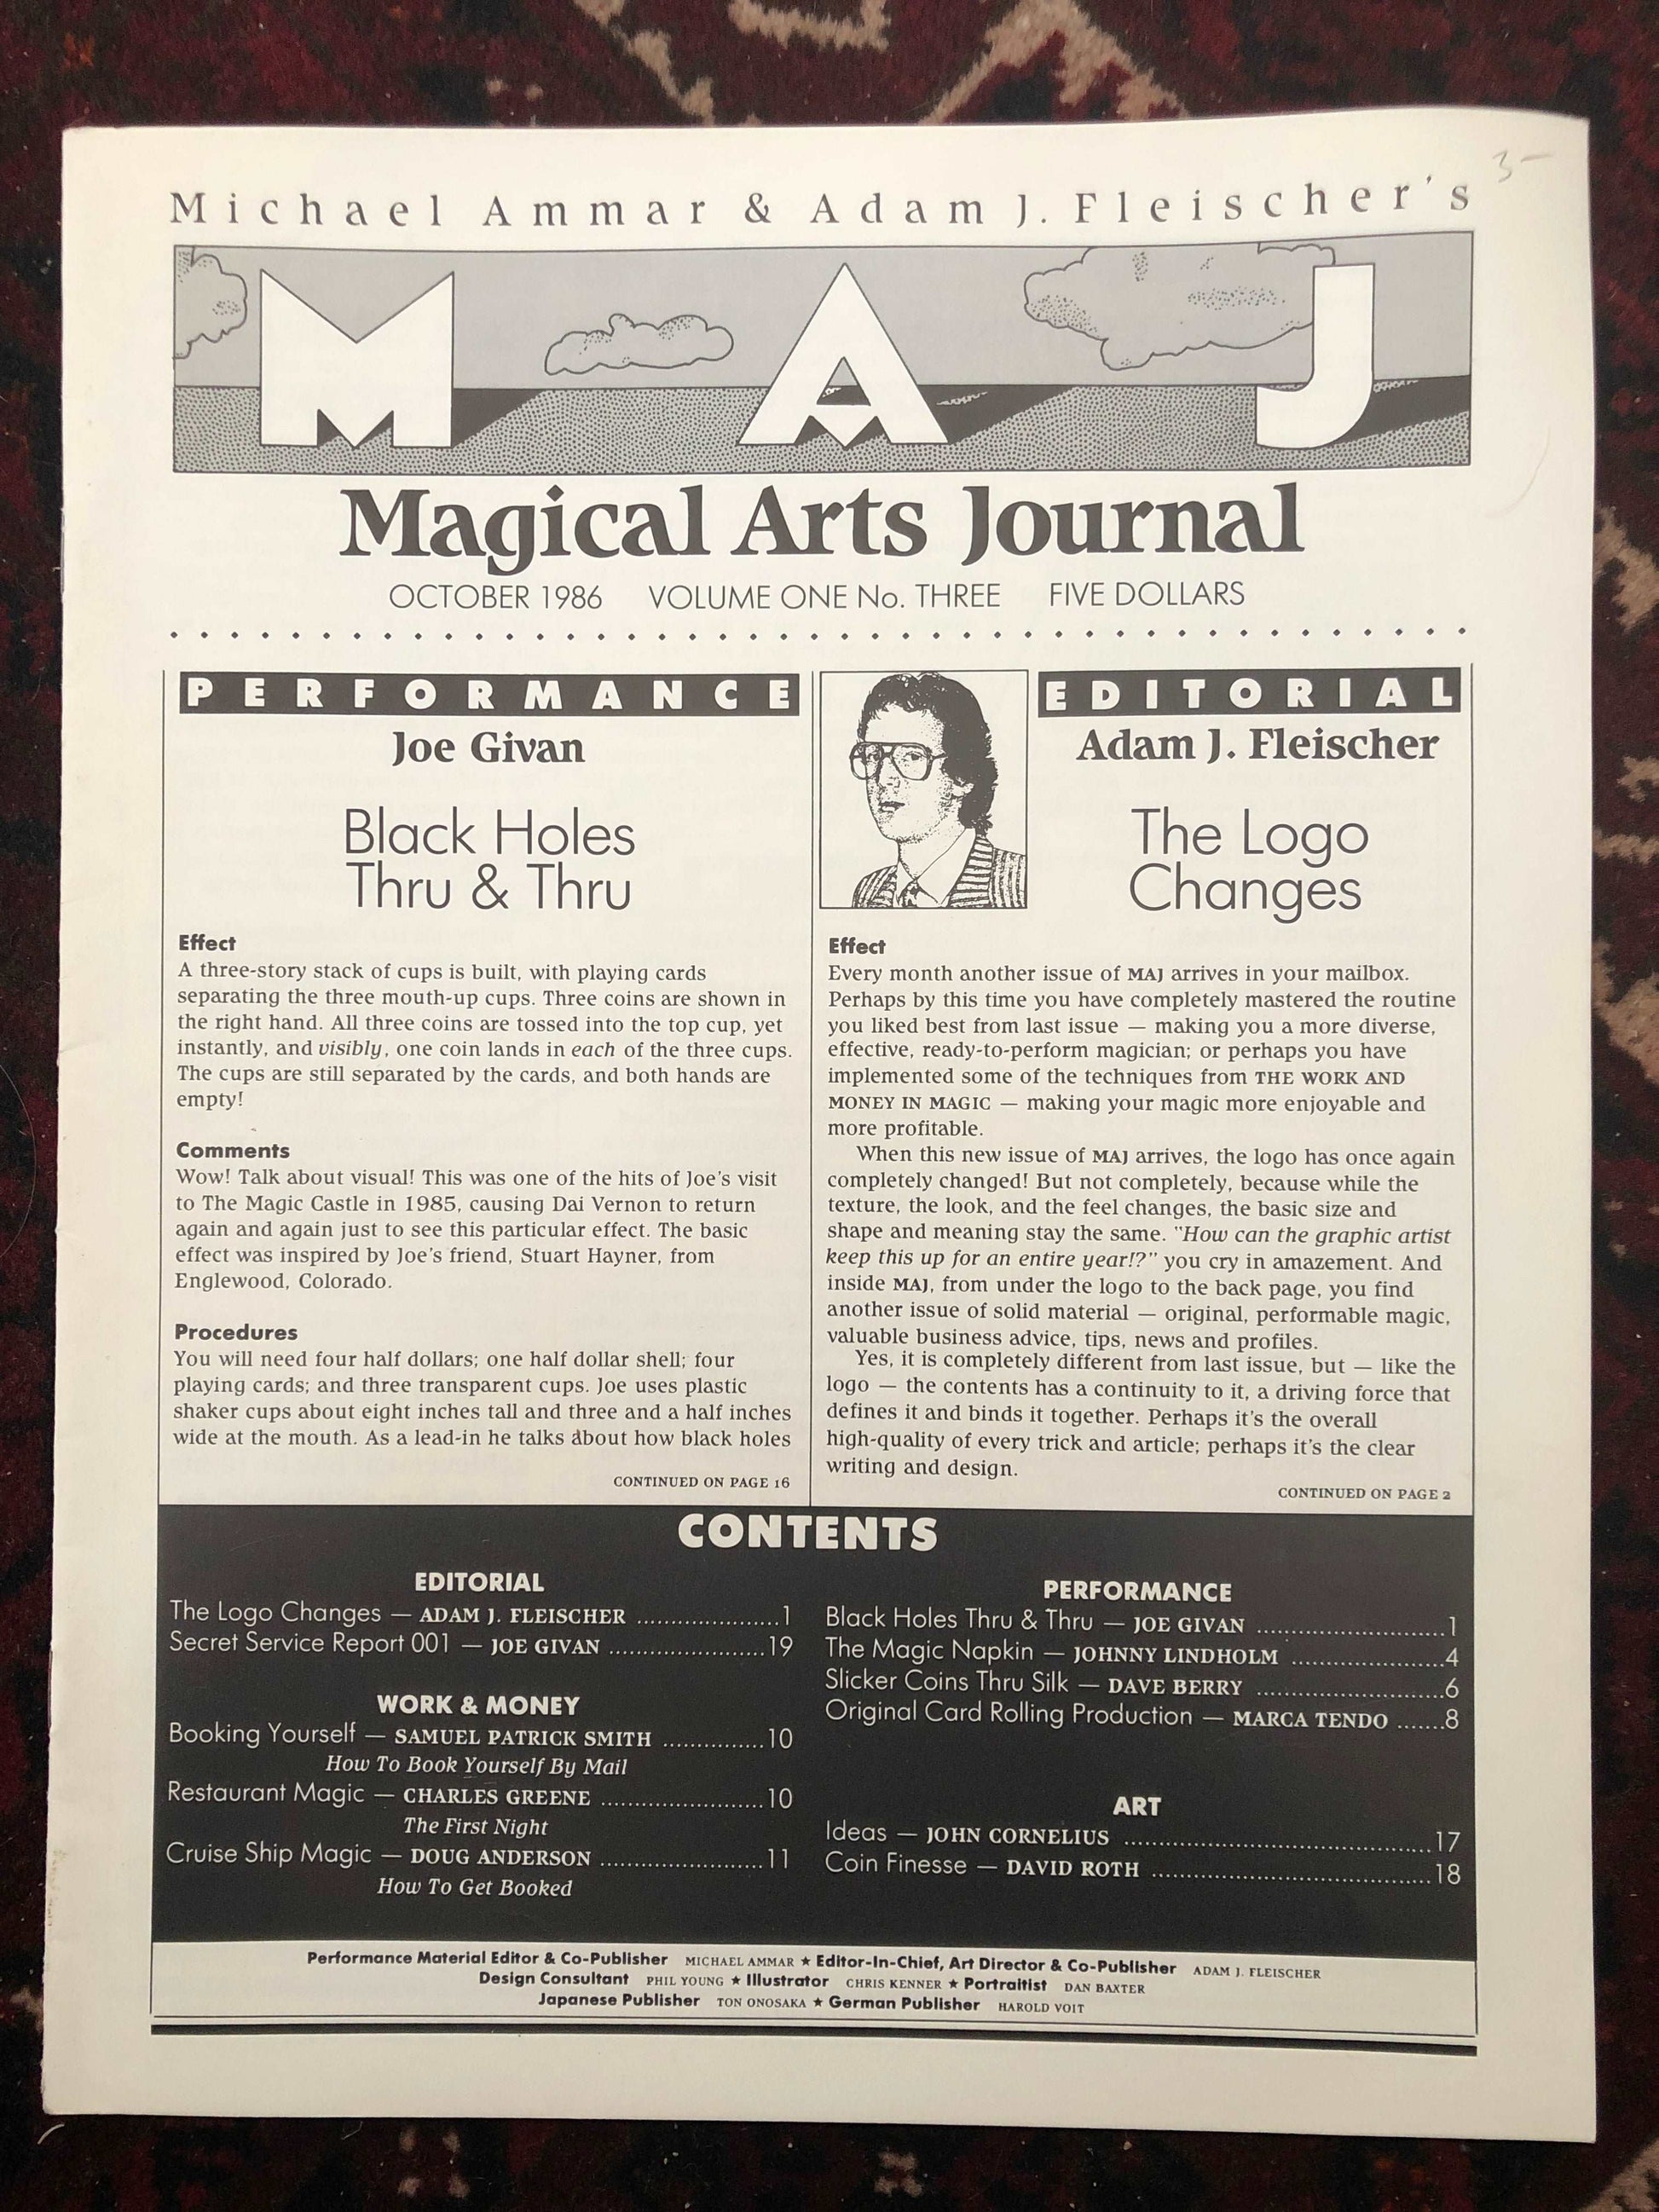 5 Original Issues of The Magical Arts Journal - Ammar & Fleischer